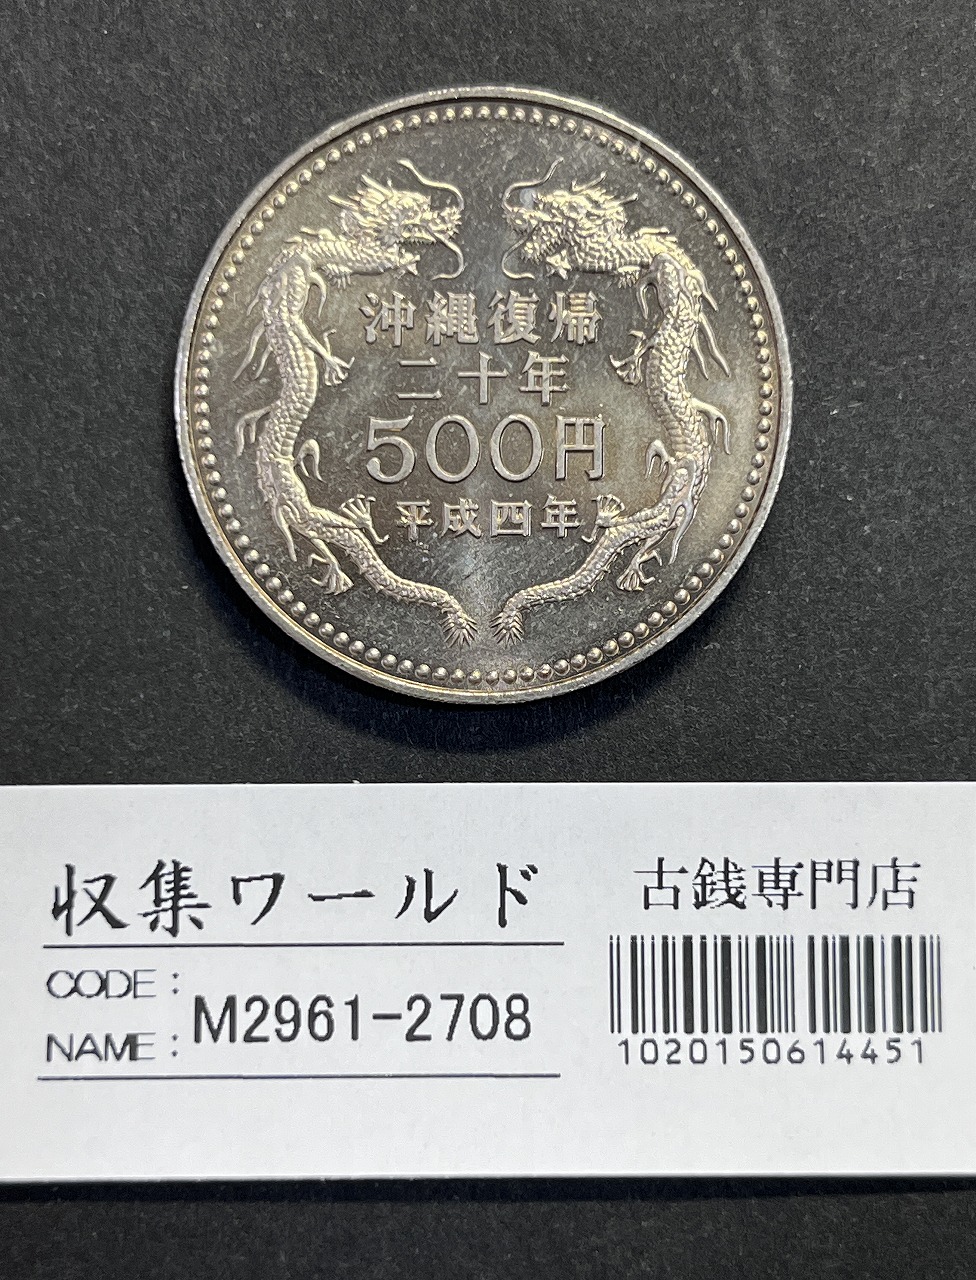 平成4年(1992) 沖縄復帰20周年記念 500円白銅貨 未使用極美-2708